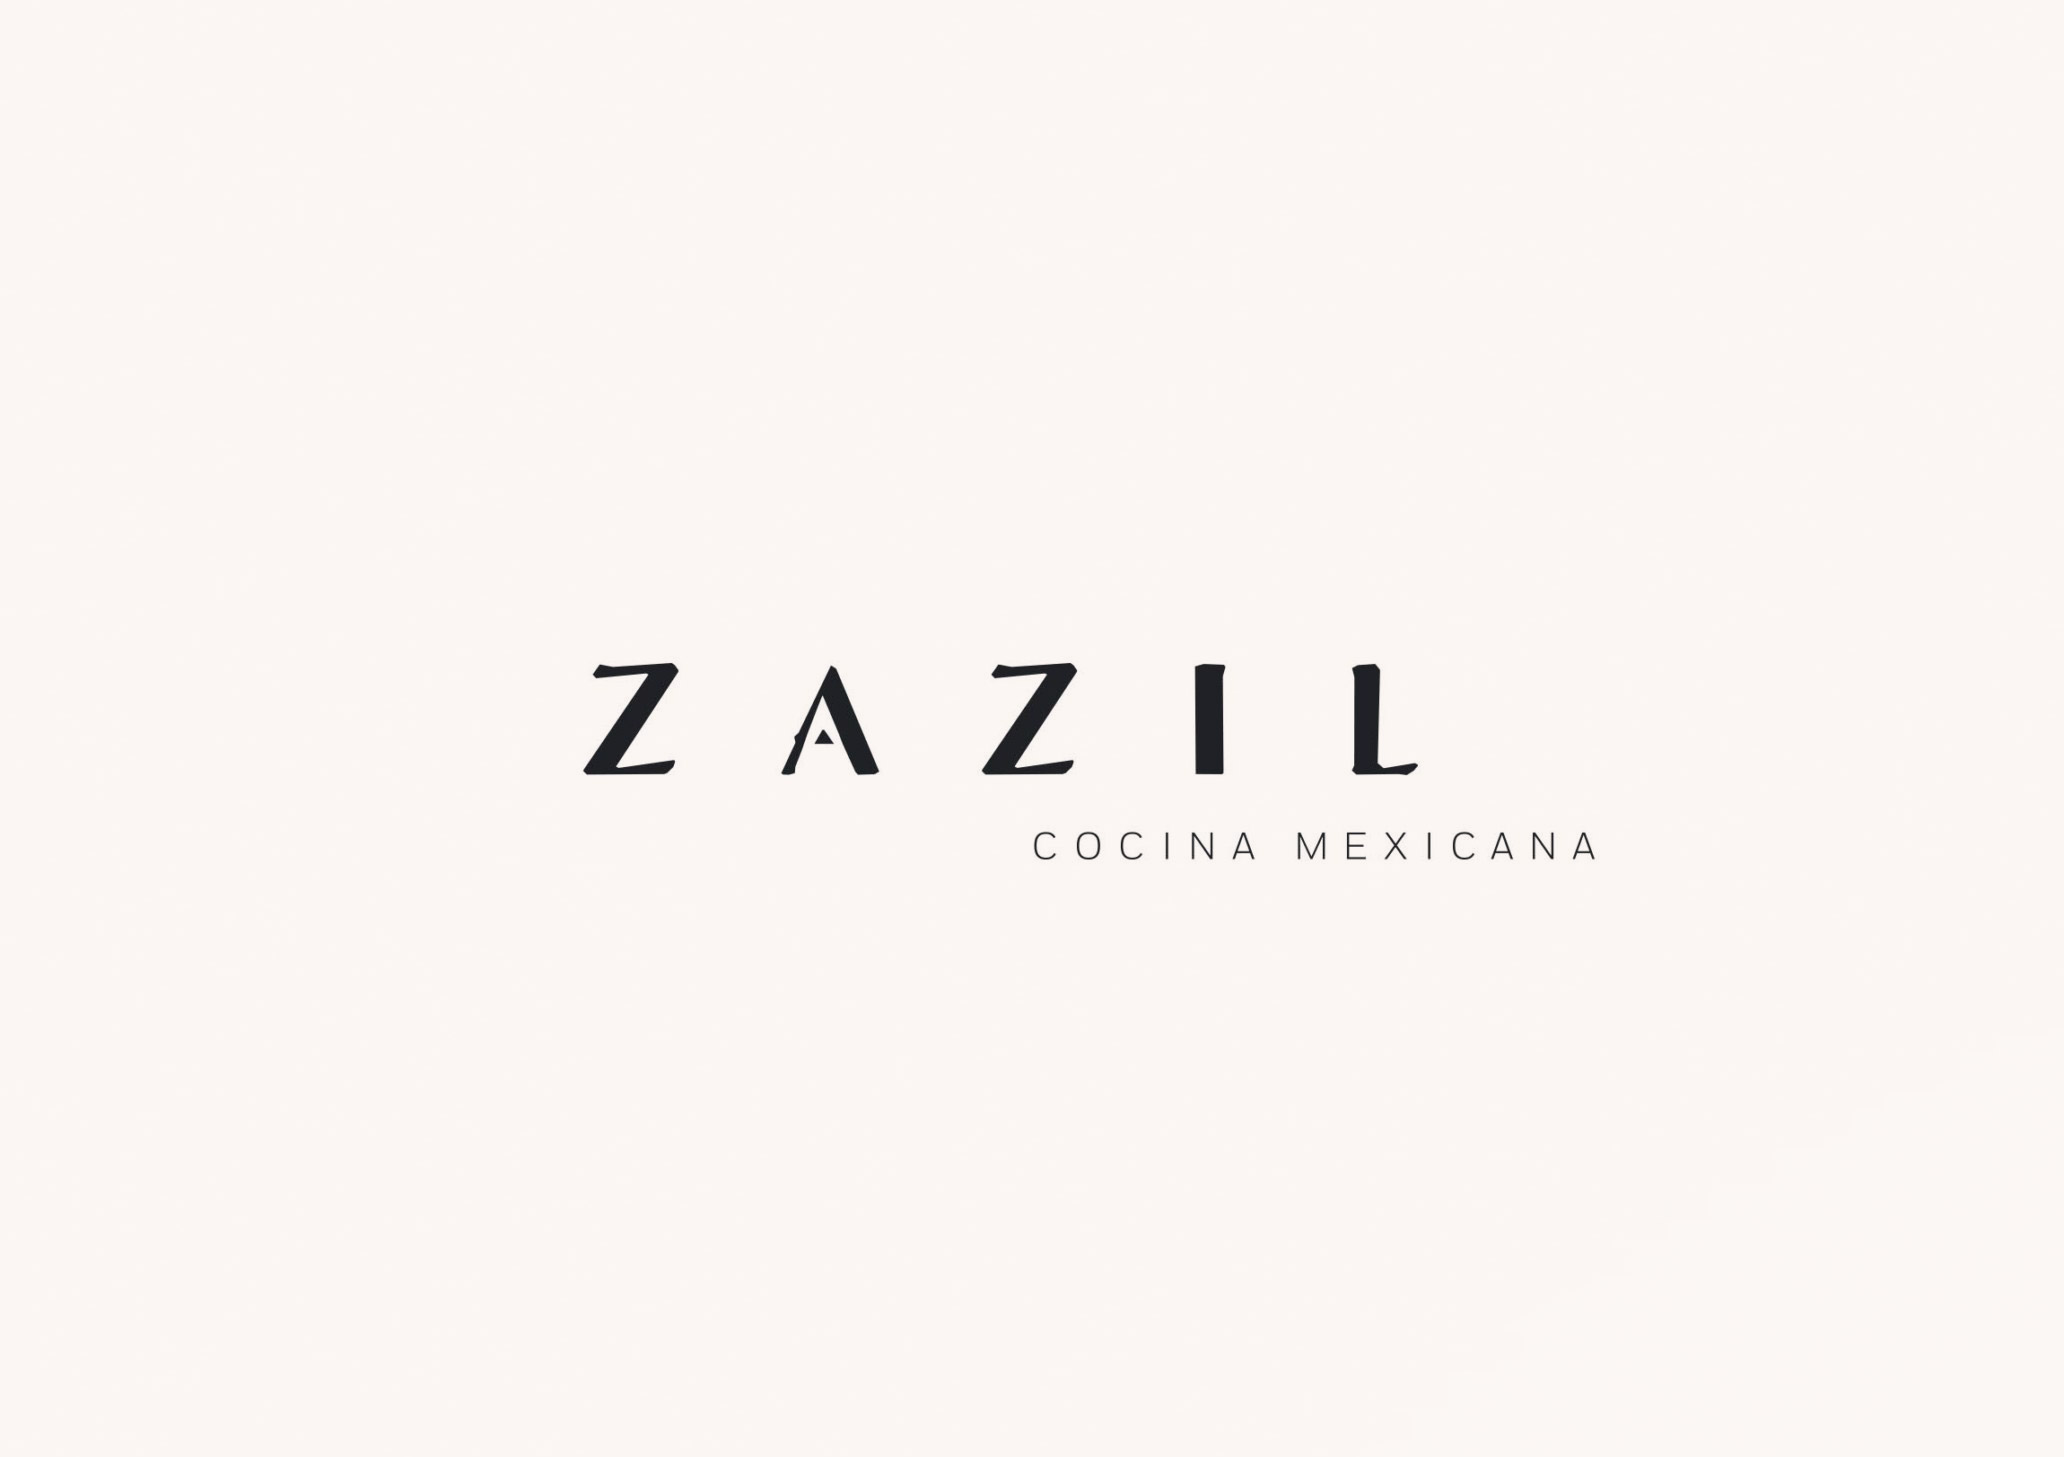 Zazil Cocina Mexicana - Pineapple